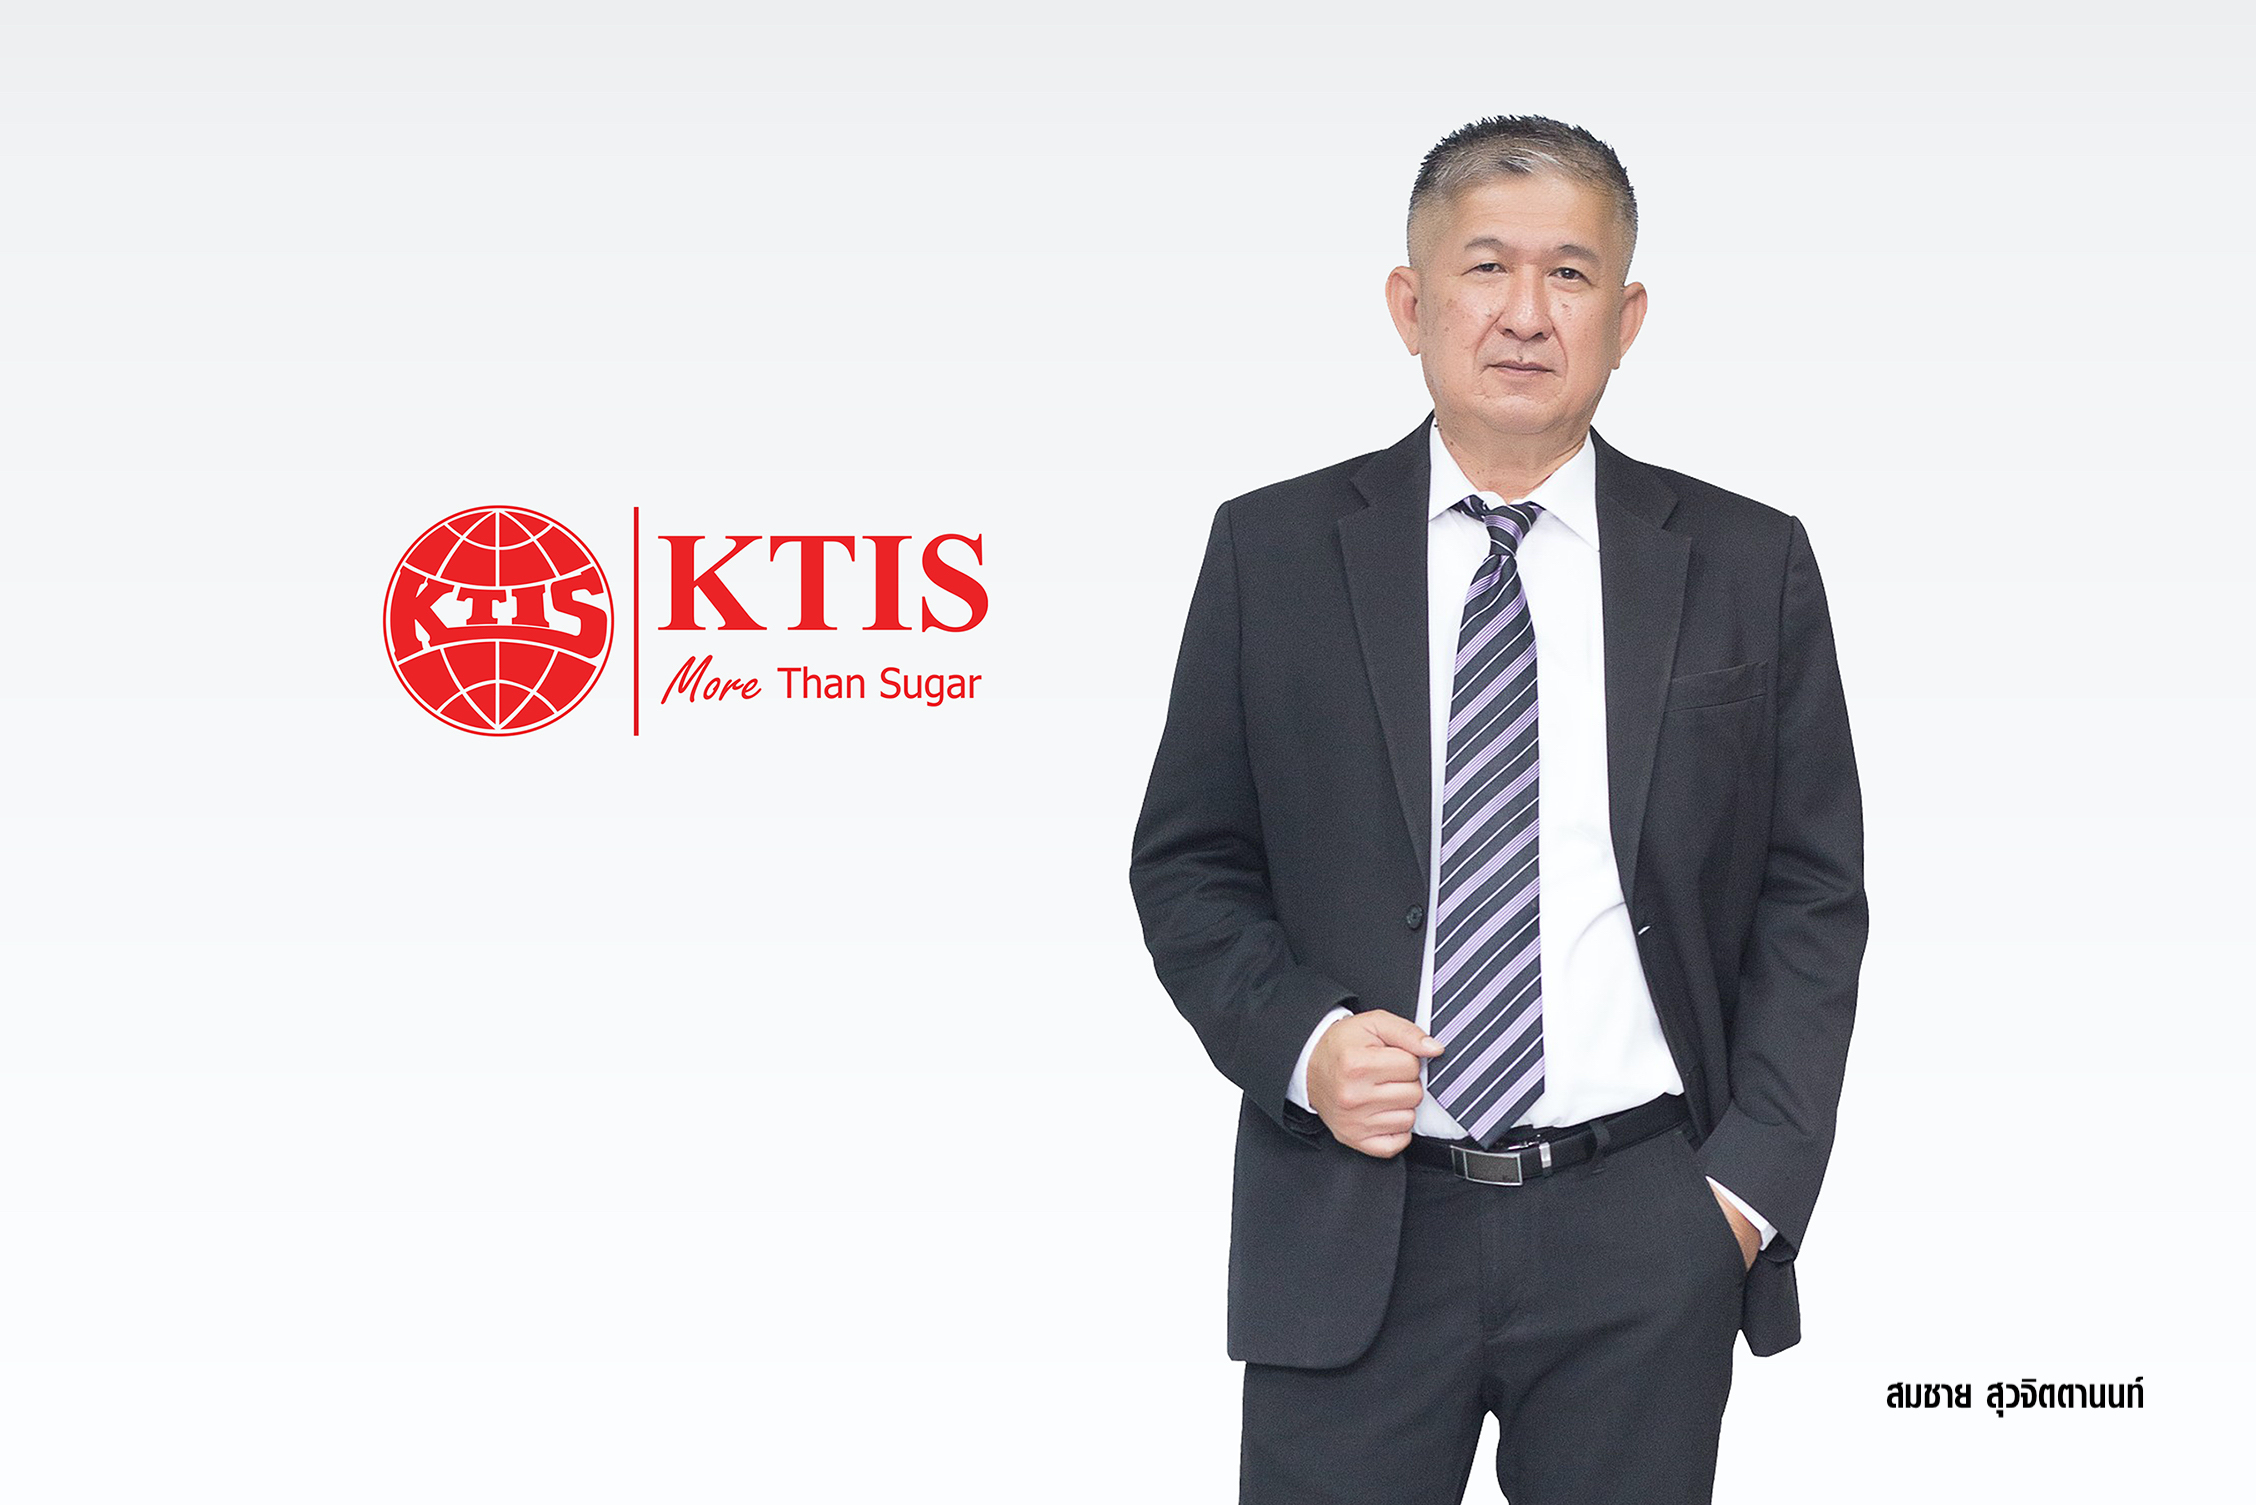 KTIS กำไรงวด 6 เดือน โตแรง 211% สายธุรกิจน้ำตาลและชีวภาพ กำไรขั้นต้นสูงขึ้น